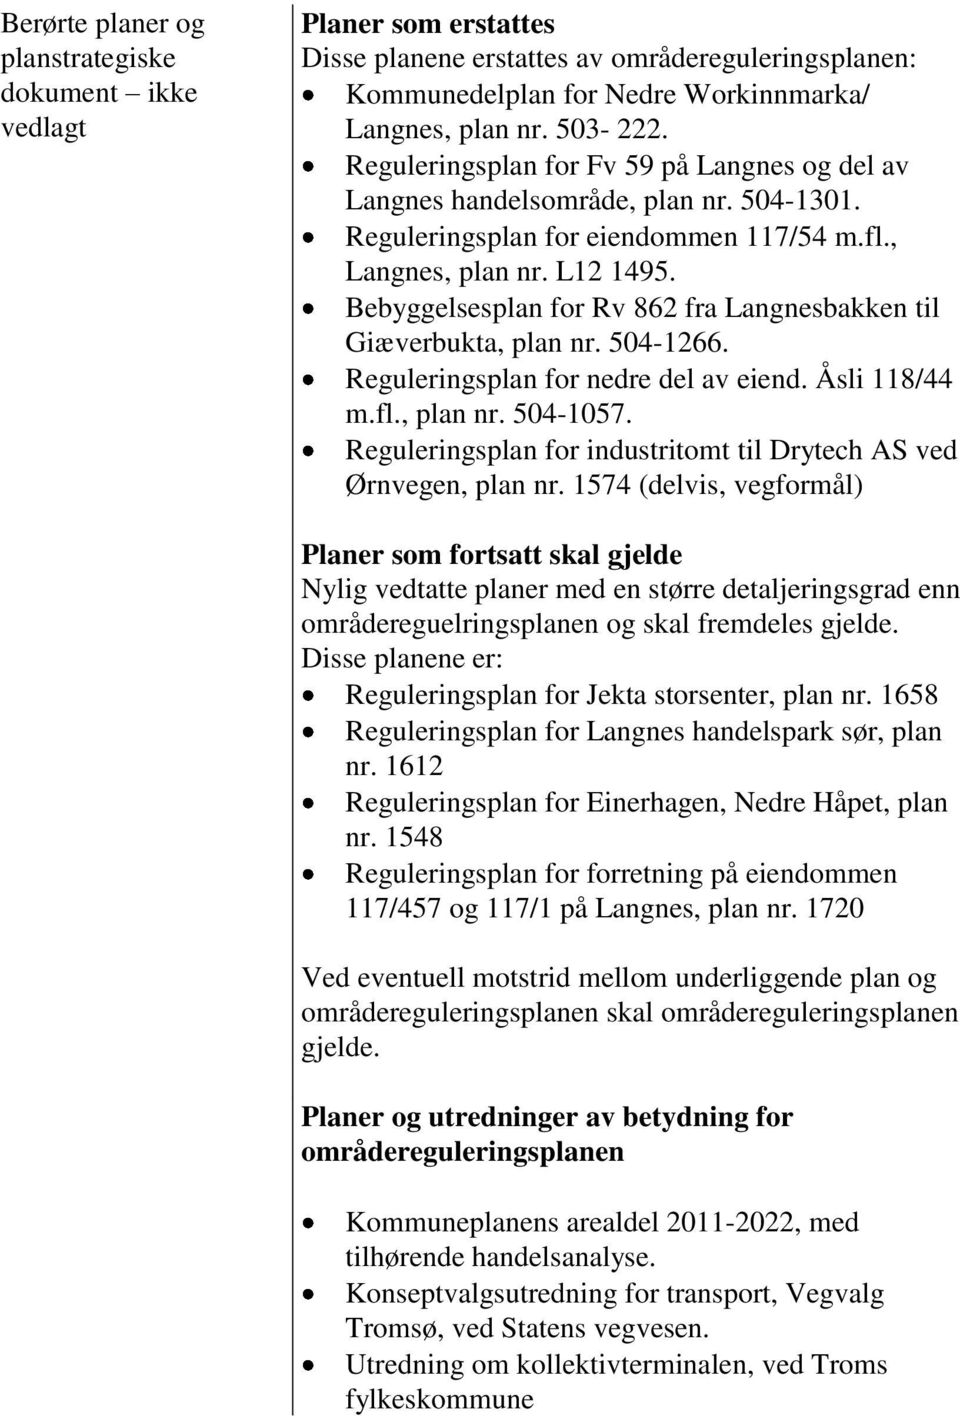 Bebyggelsesplan for Rv 862 fra Langnesbakken til Giæverbukta, plan nr. 504-1266. Reguleringsplan for nedre del av eiend. Åsli 118/44 m.fl., plan nr. 504-1057.